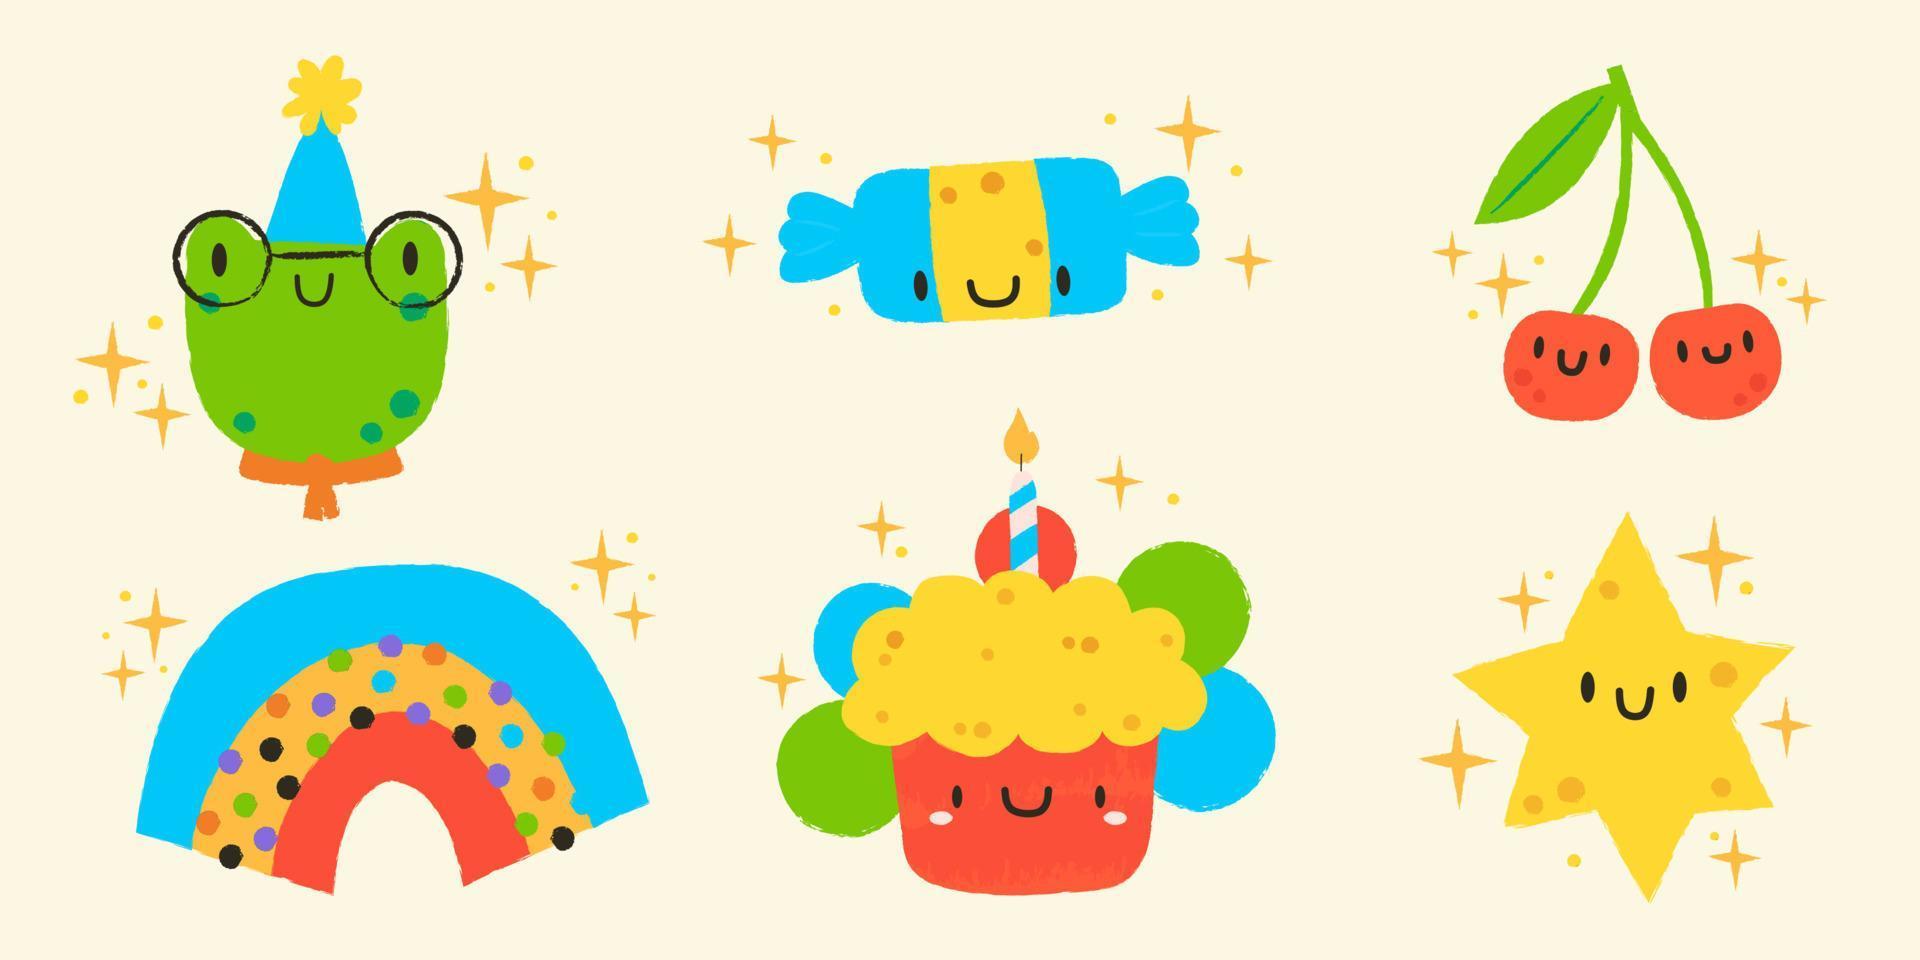 uppsättning av 6 illustrationer i söt stil. söt groda, godis, körsbär, regnbåge, kaka och stjärna.hand dragen födelsedag etiketter uppsättning vektor illustration design.glad födelsedag hälsning kort för barn